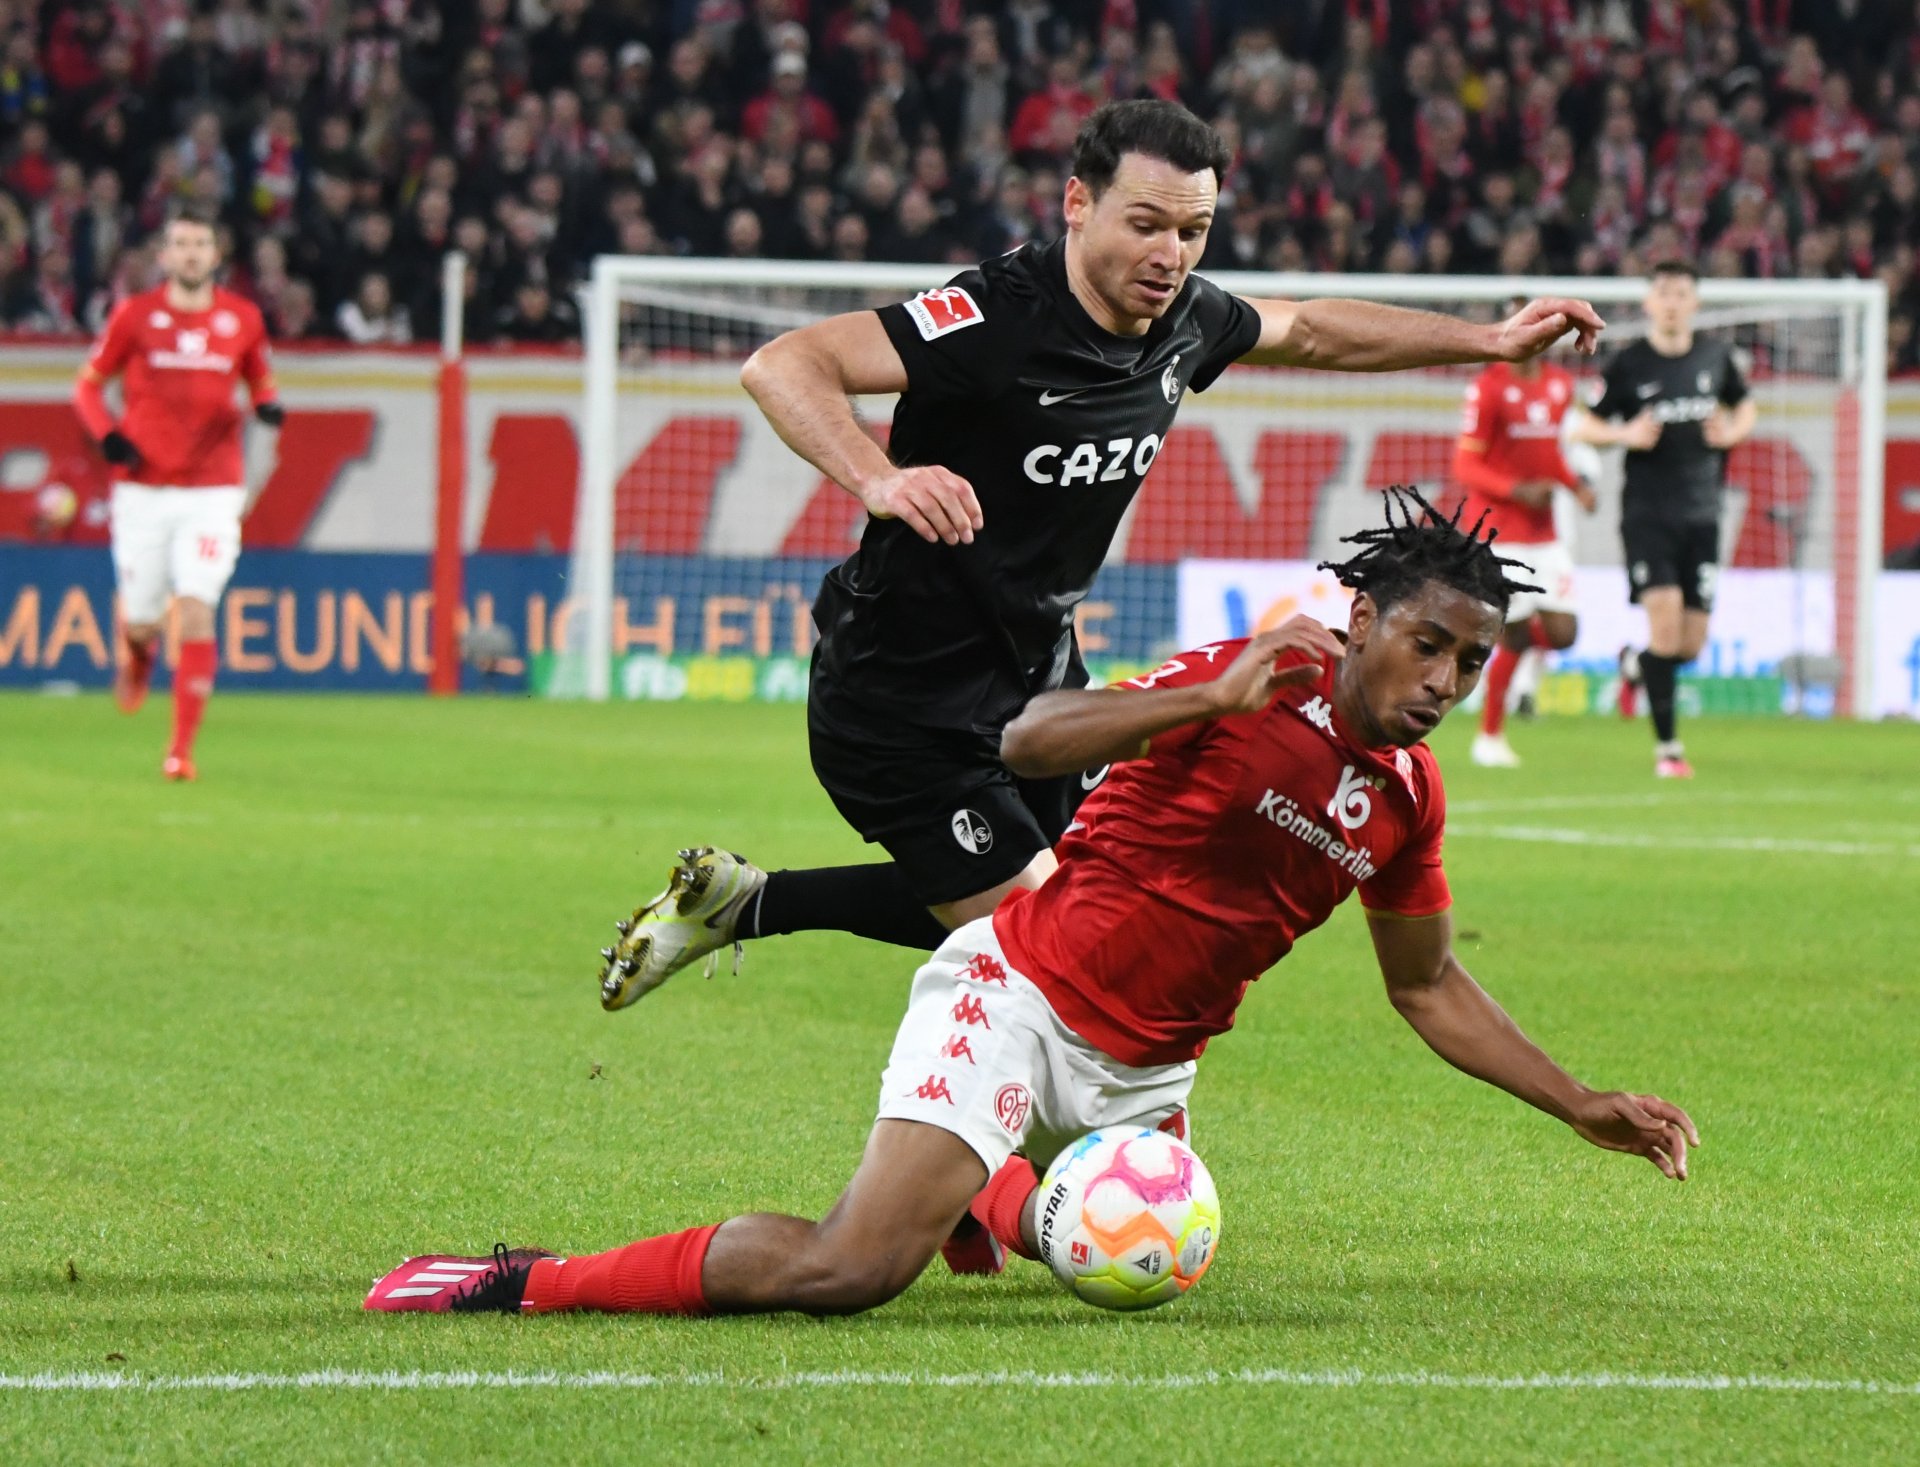 ...bringt den Mainzer Mittelfeldspieler kurz vor dem Freiburger Strafraum zu Fall. Warum Schiedsrichter Bastian Dankert dieses Foul nicht ahndete, blieb eine offene Frage.